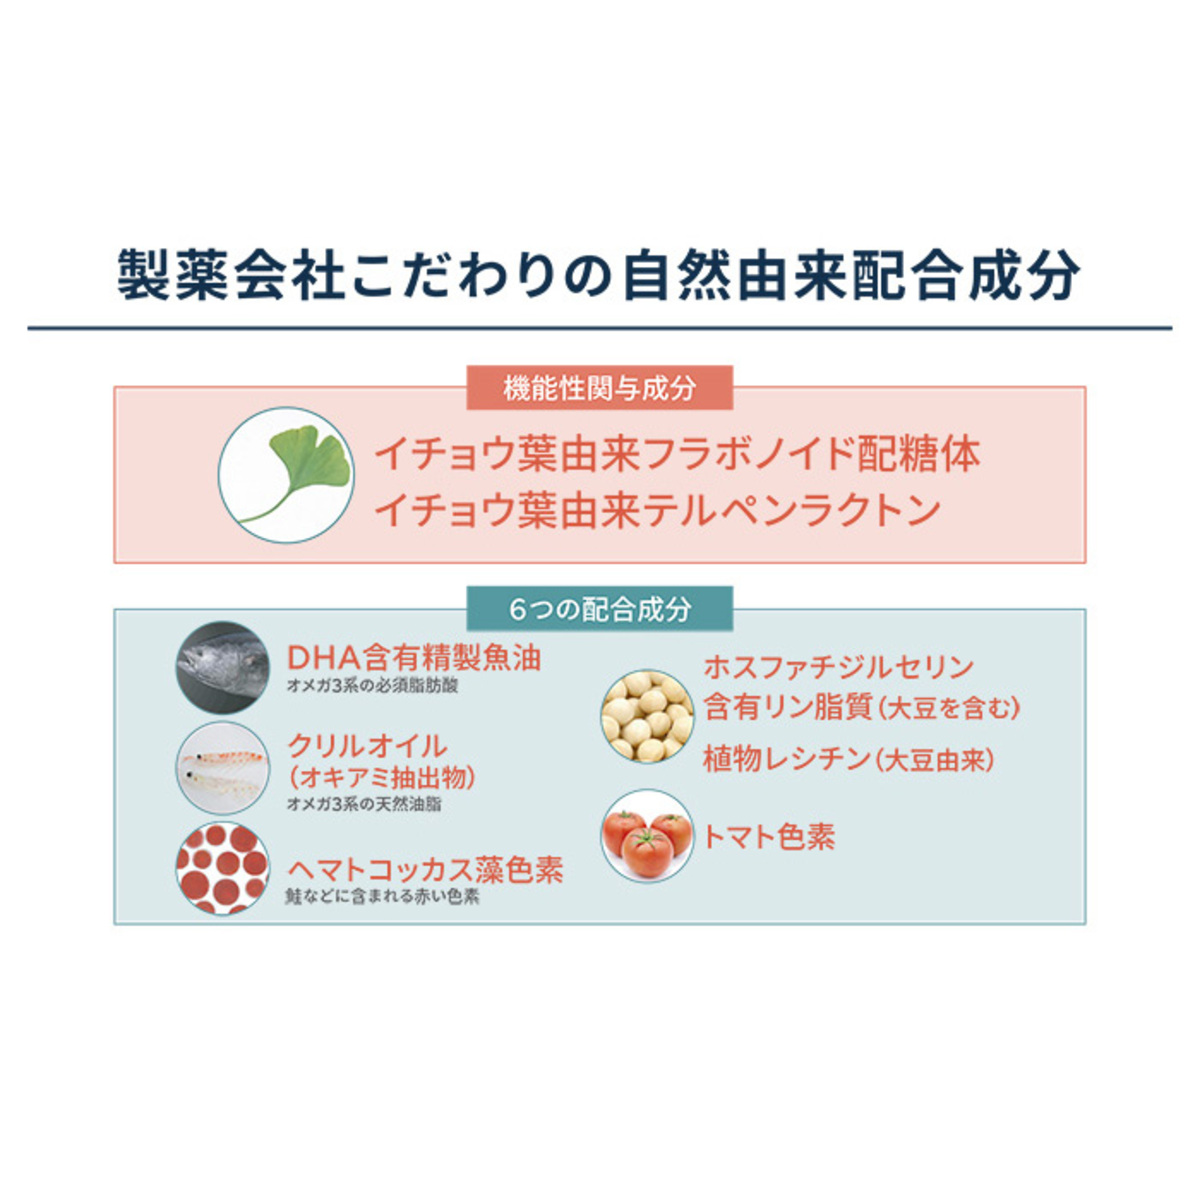 機能性表示食品記憶のとびらサプリ[30日分] - QVC.jp